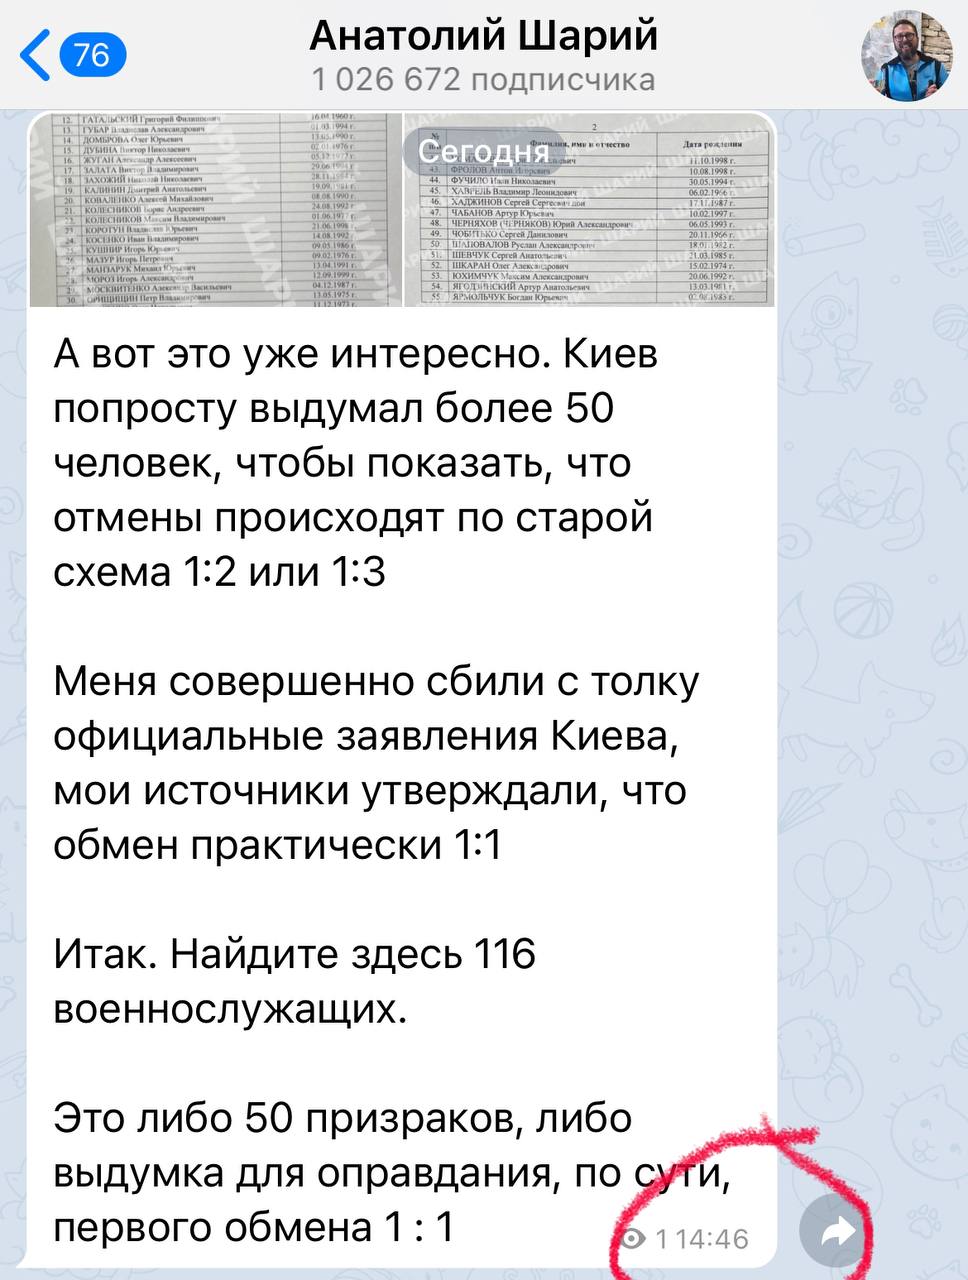 Труха телеграмм украина на русском языке фото 74